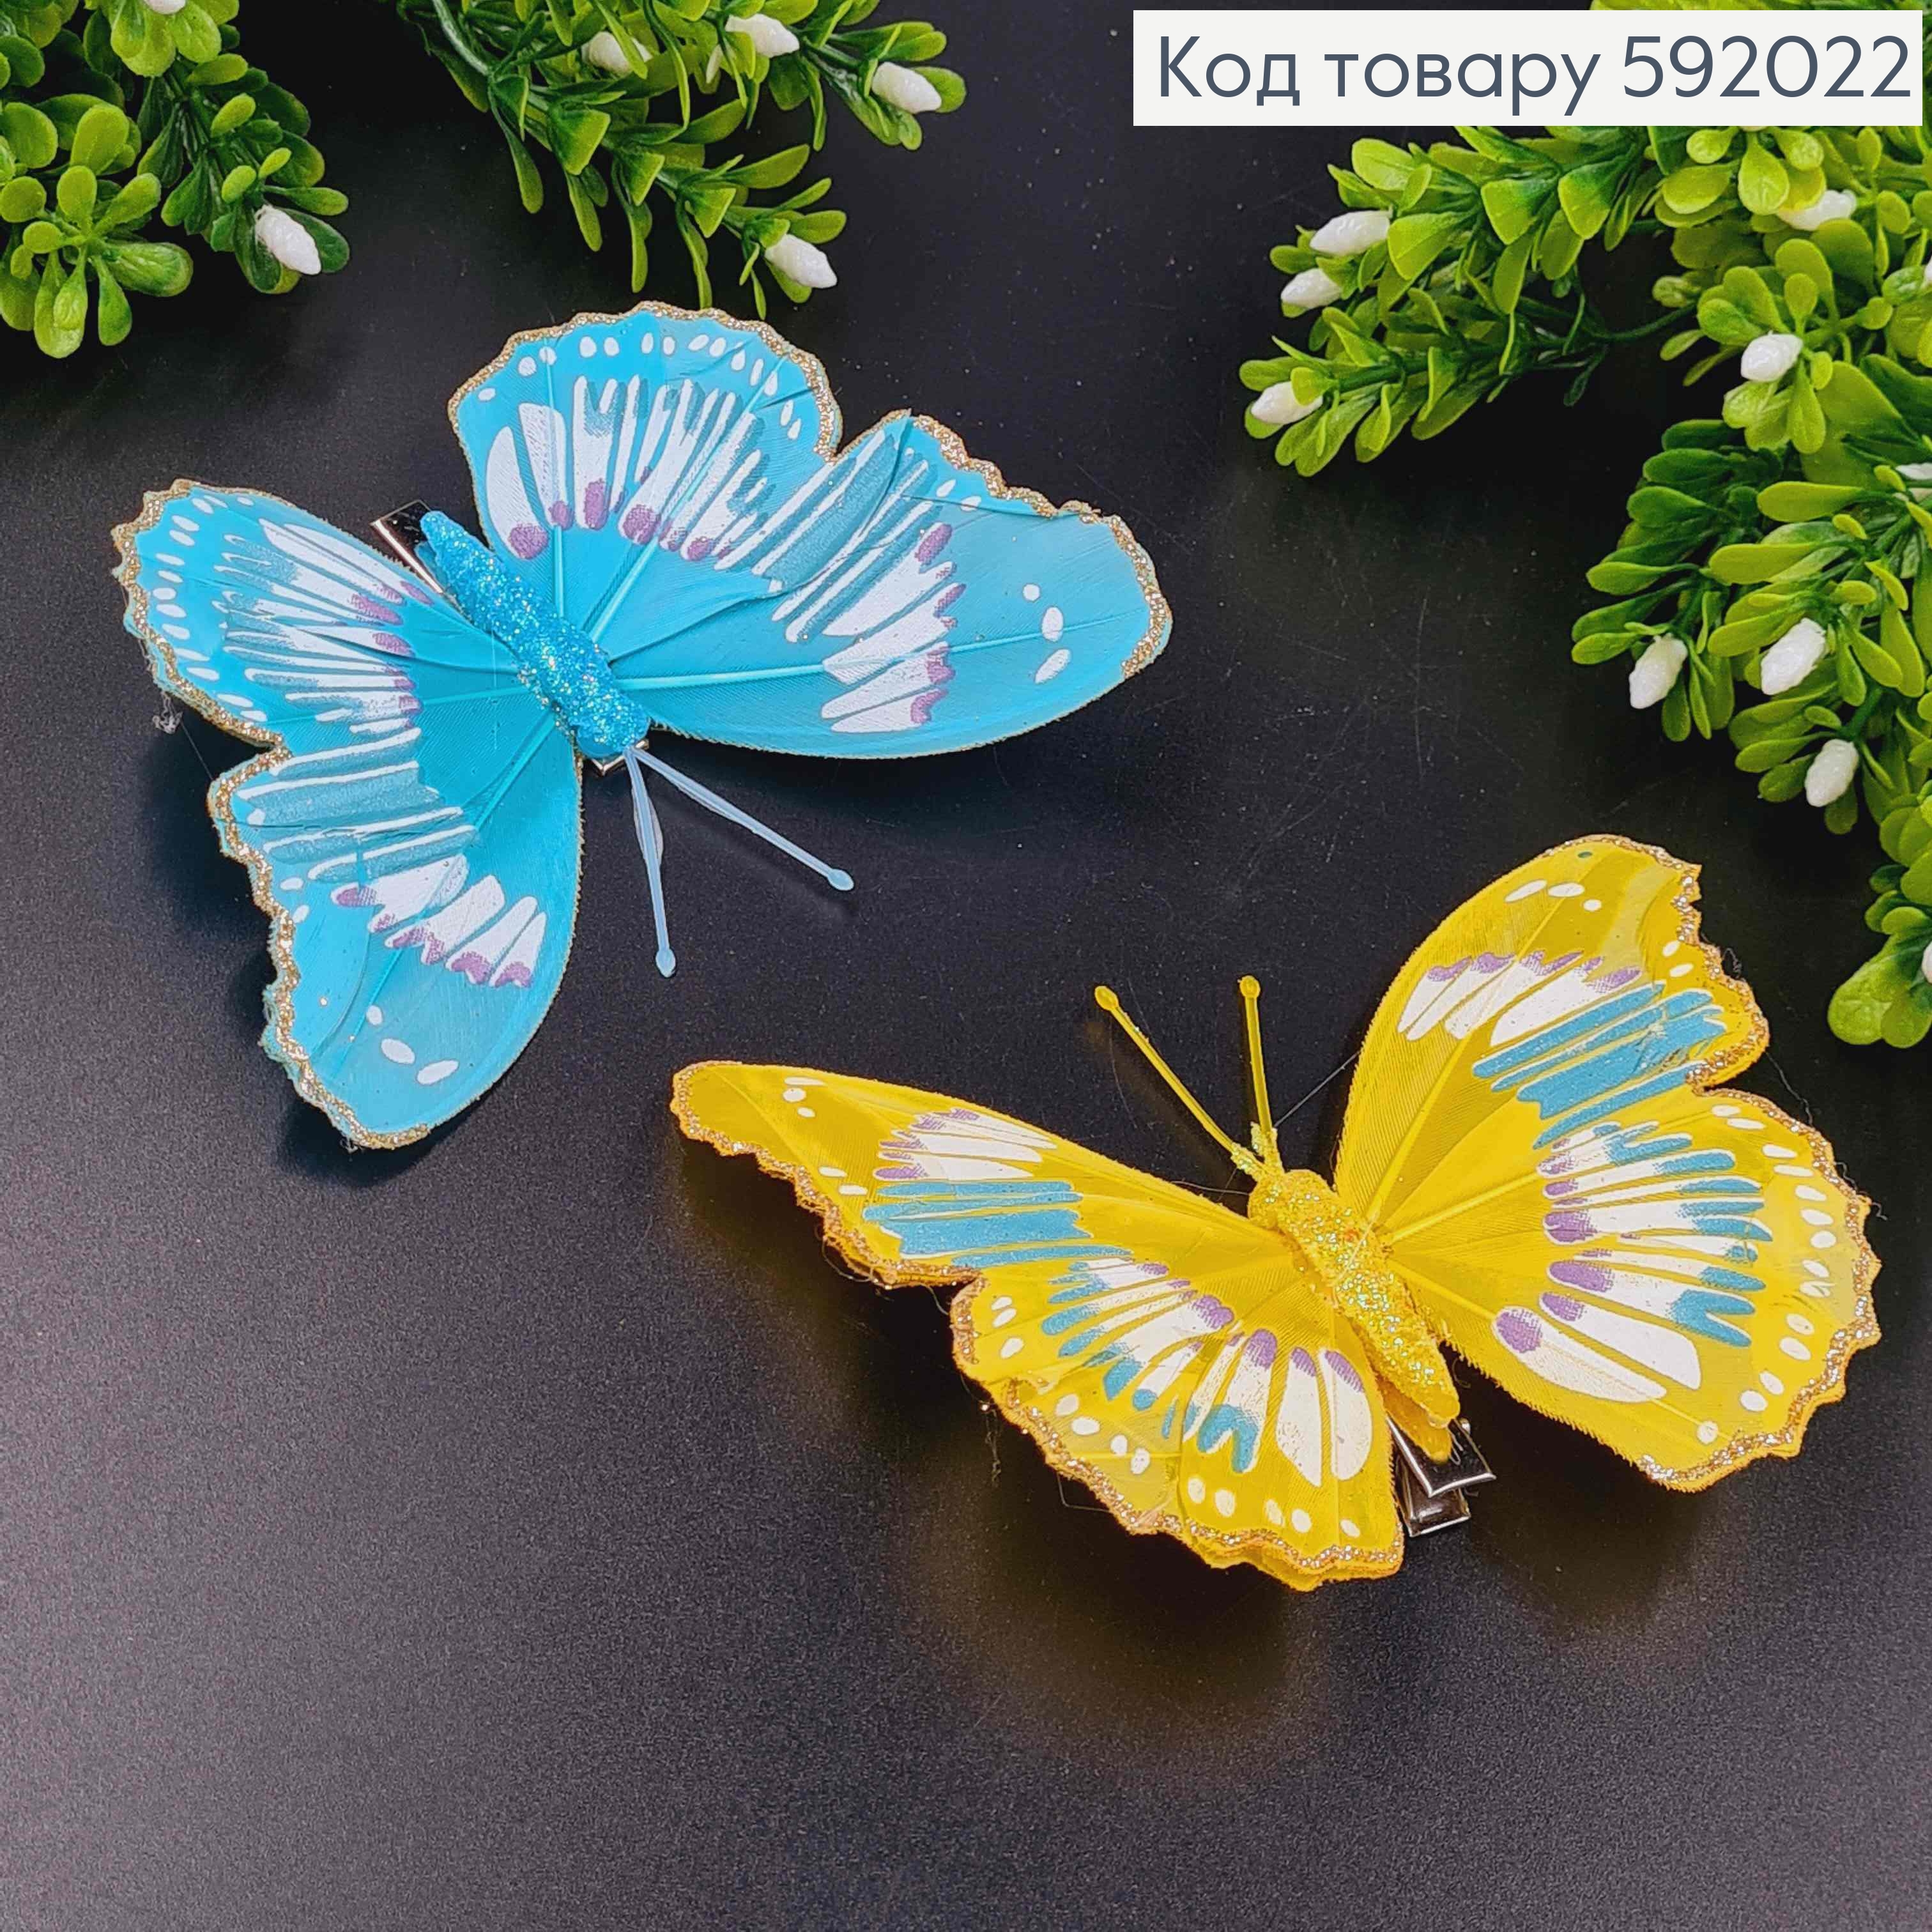 Флористическая заколка, Бабочка яркие цвета в ассорт., с блестками на краях, 12см. Польша 592022 фото 2